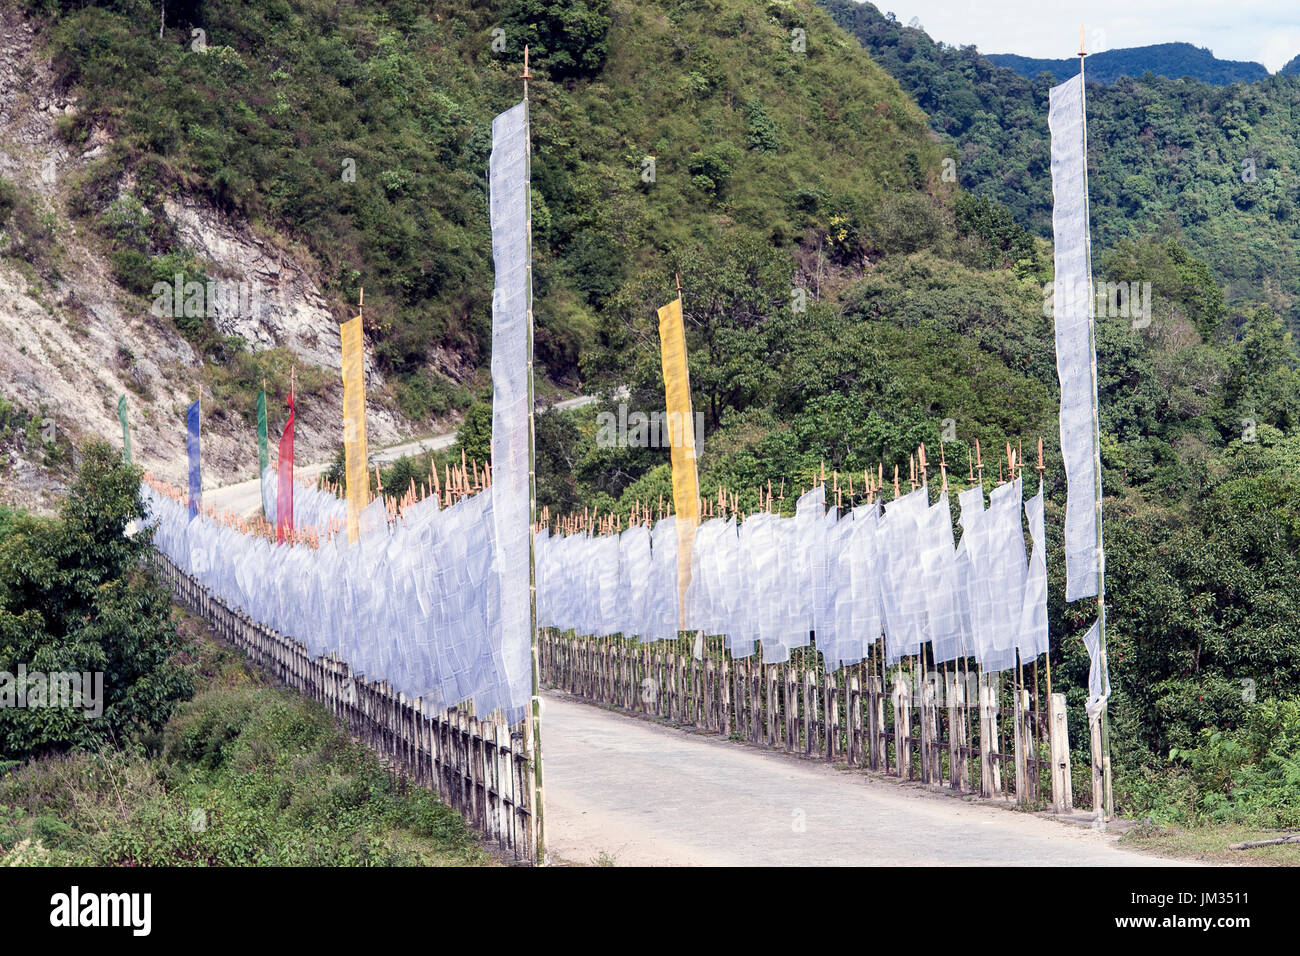 Buddhist Prayer Flags - Bhutan Stock Photo